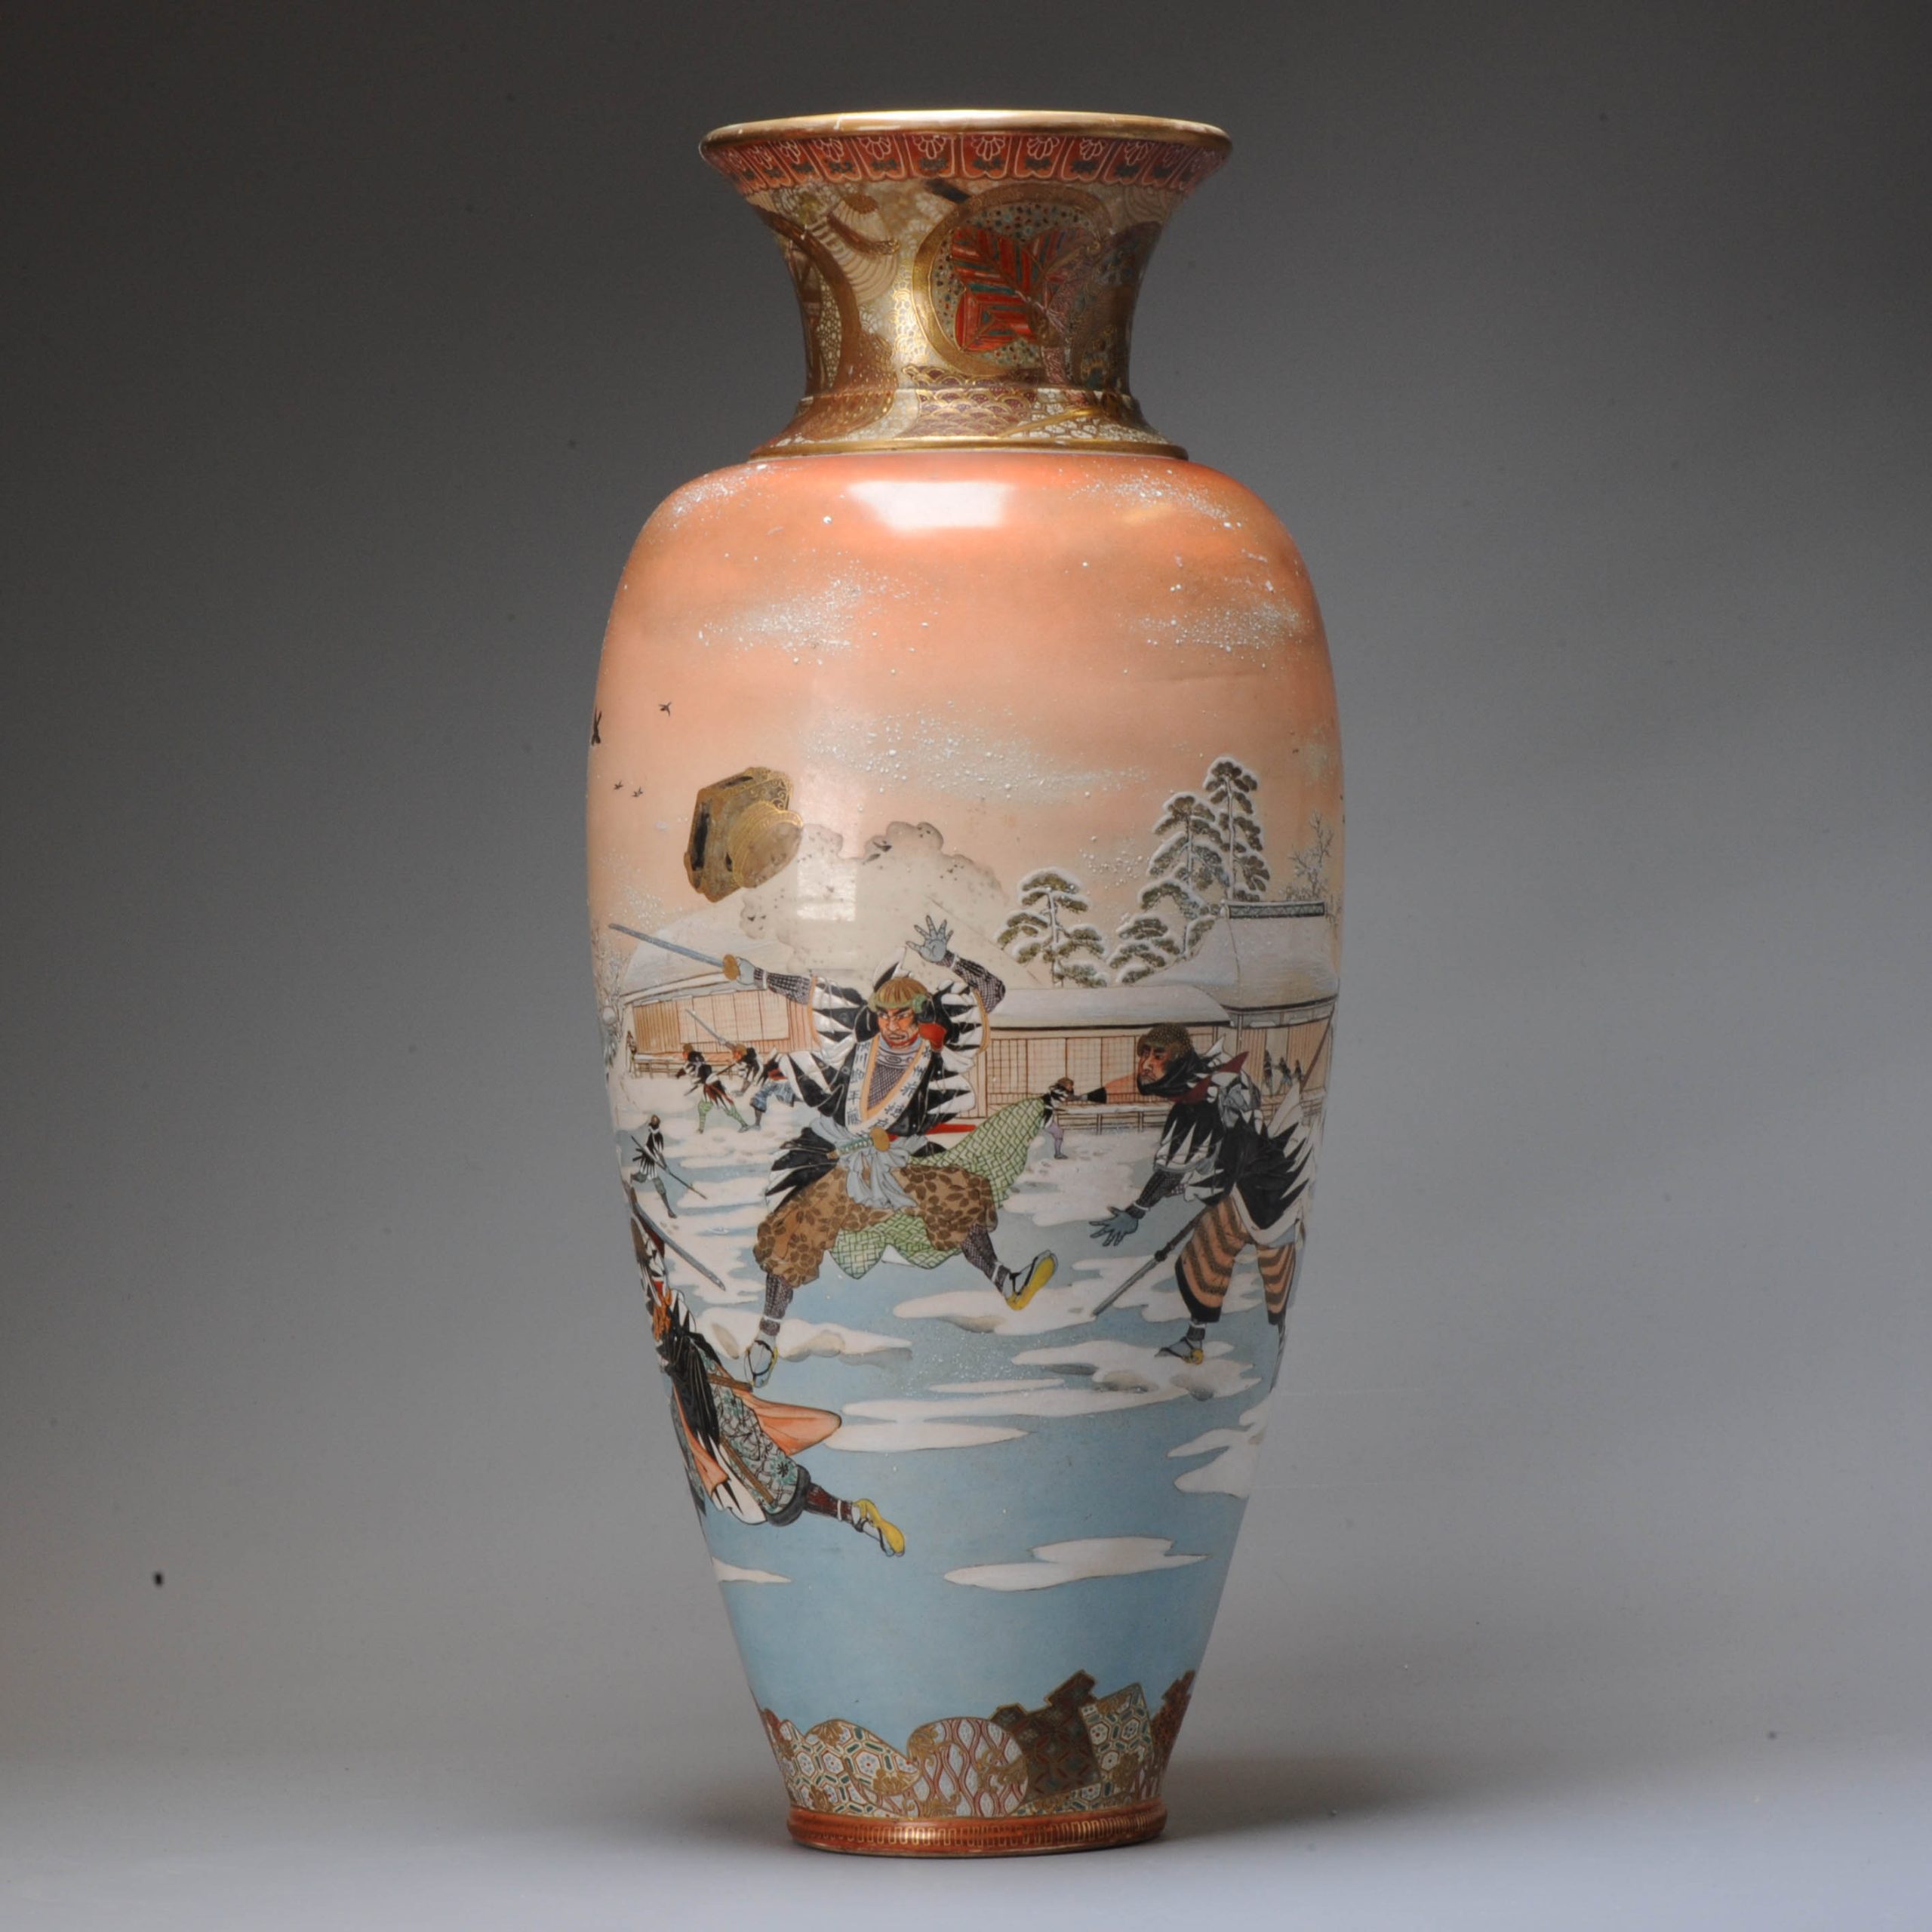 Large Antique Meiji period Japanese Satsuma vase with mark Japan 19c